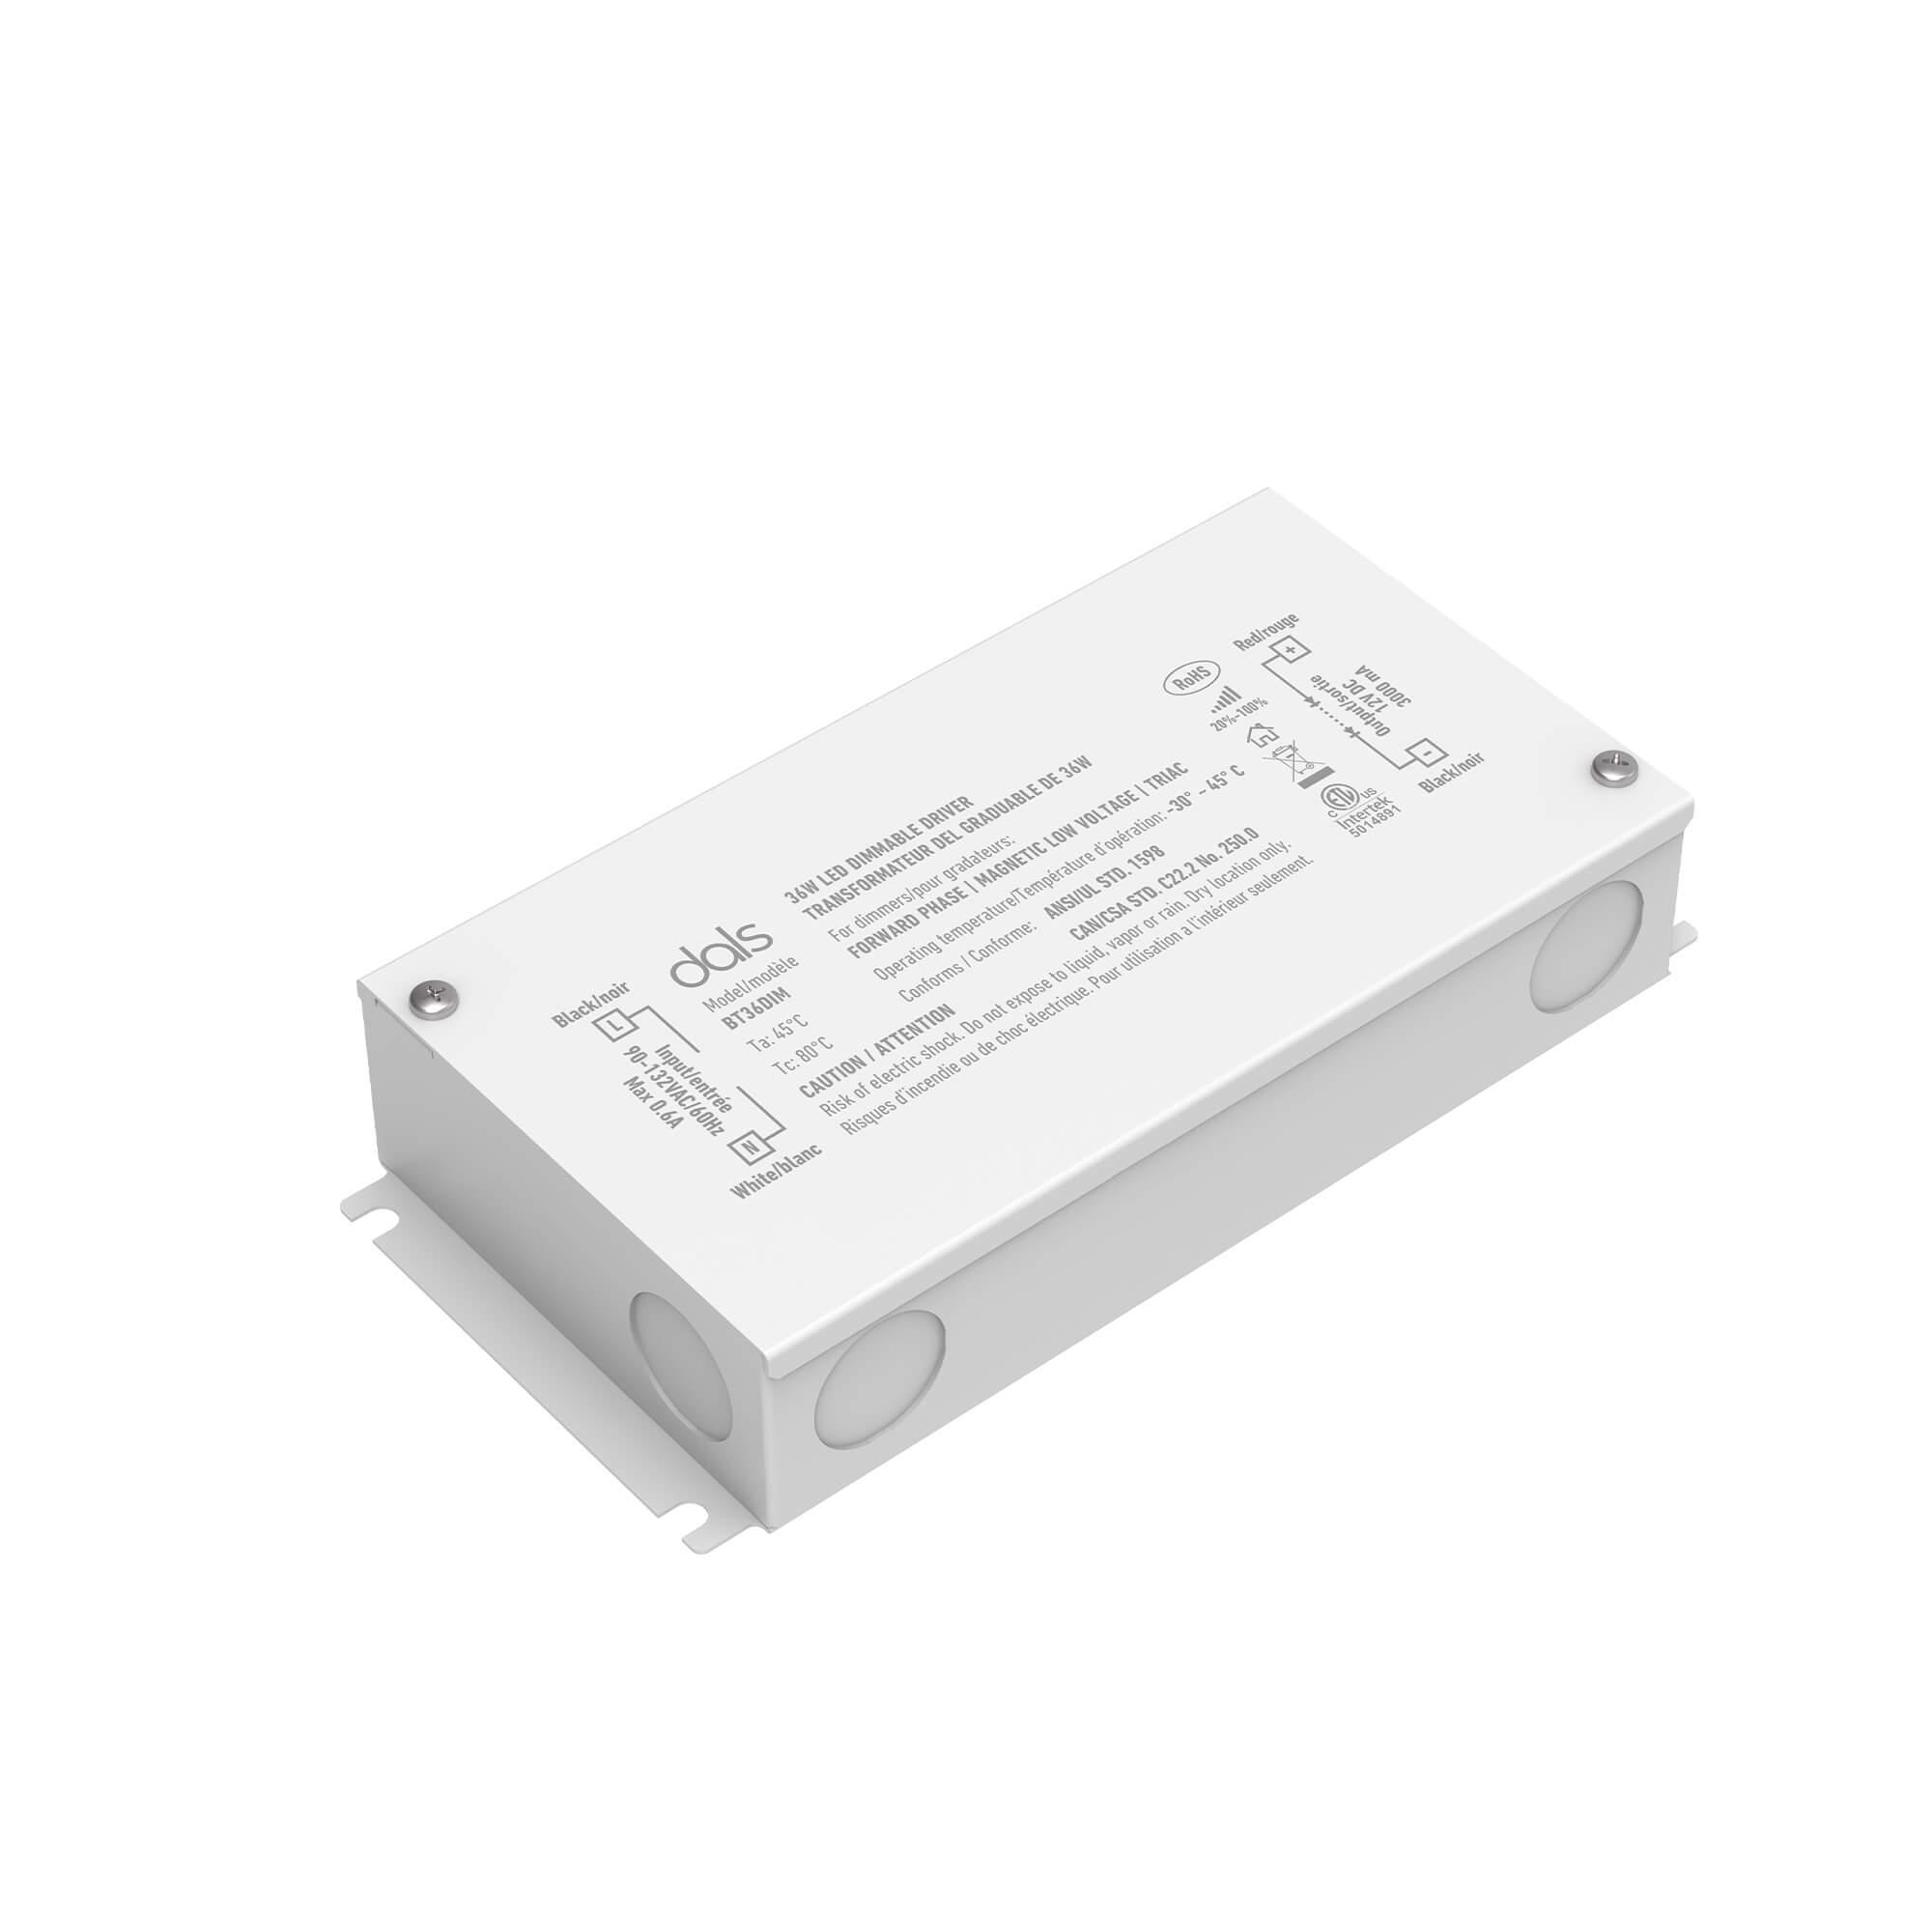 Transformateur LED à courant constant 350 mA 14-28 watts